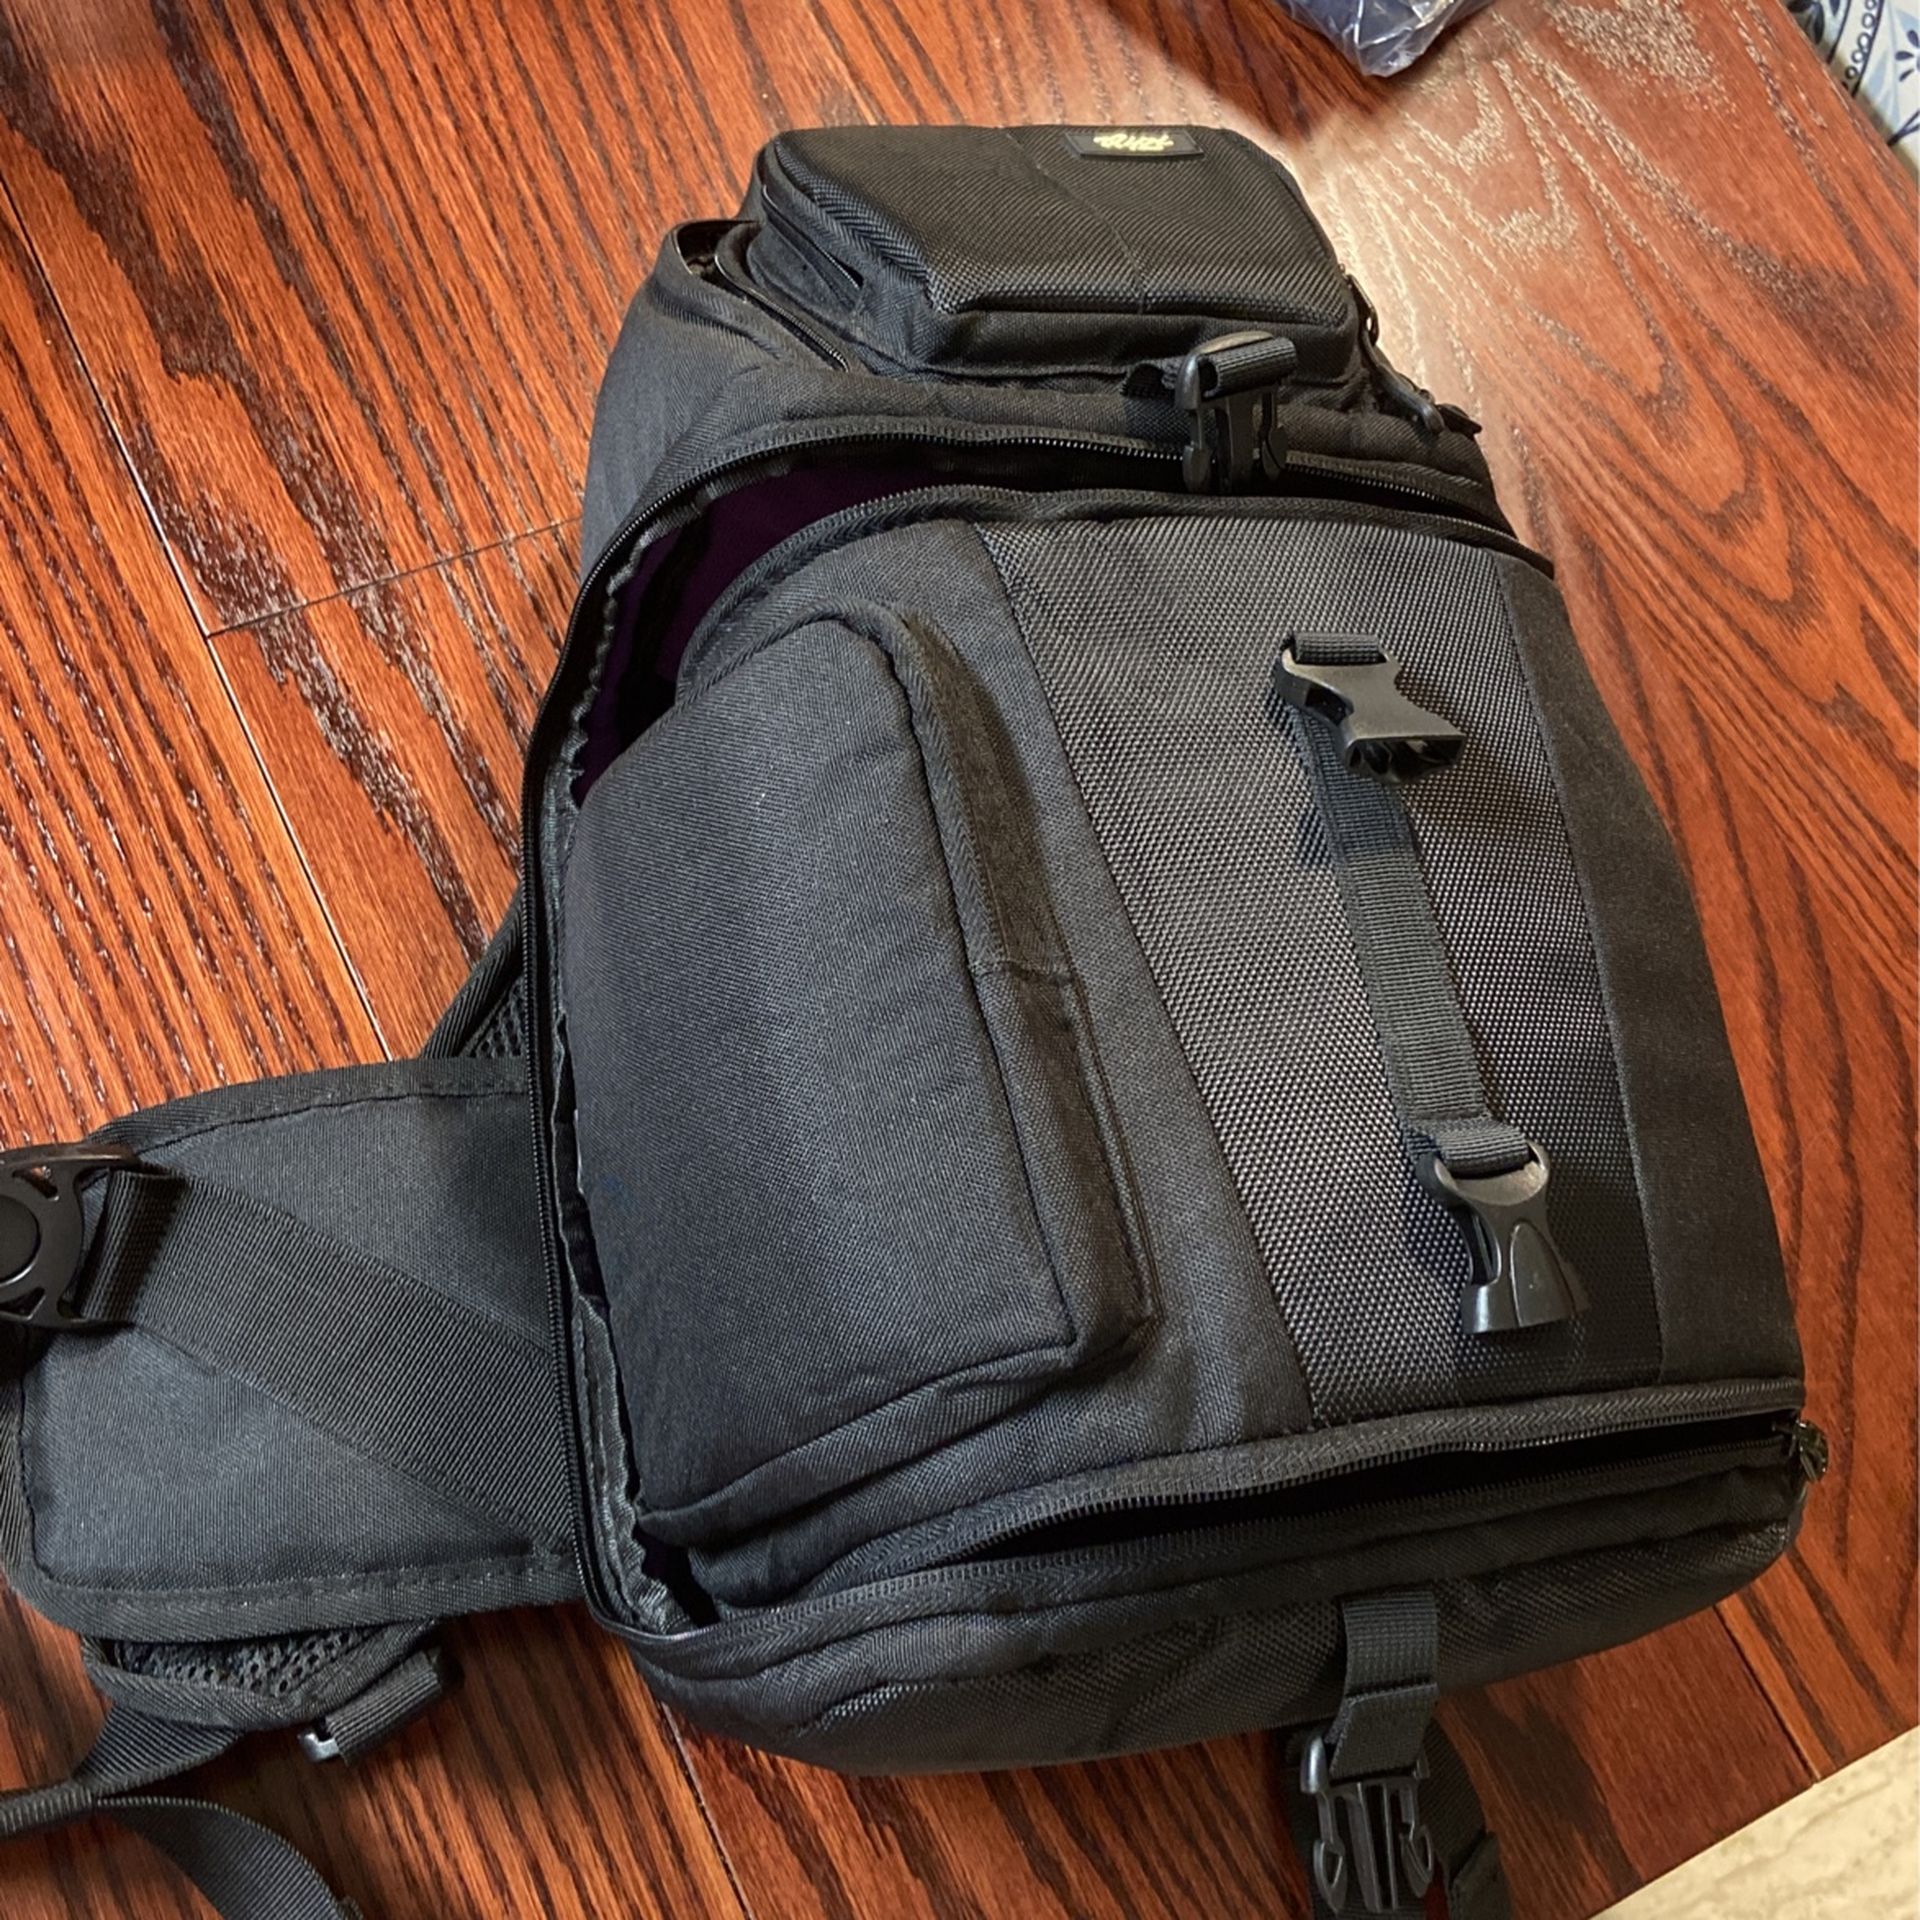 Qipi Sling bag Style Camera Case Backpack 